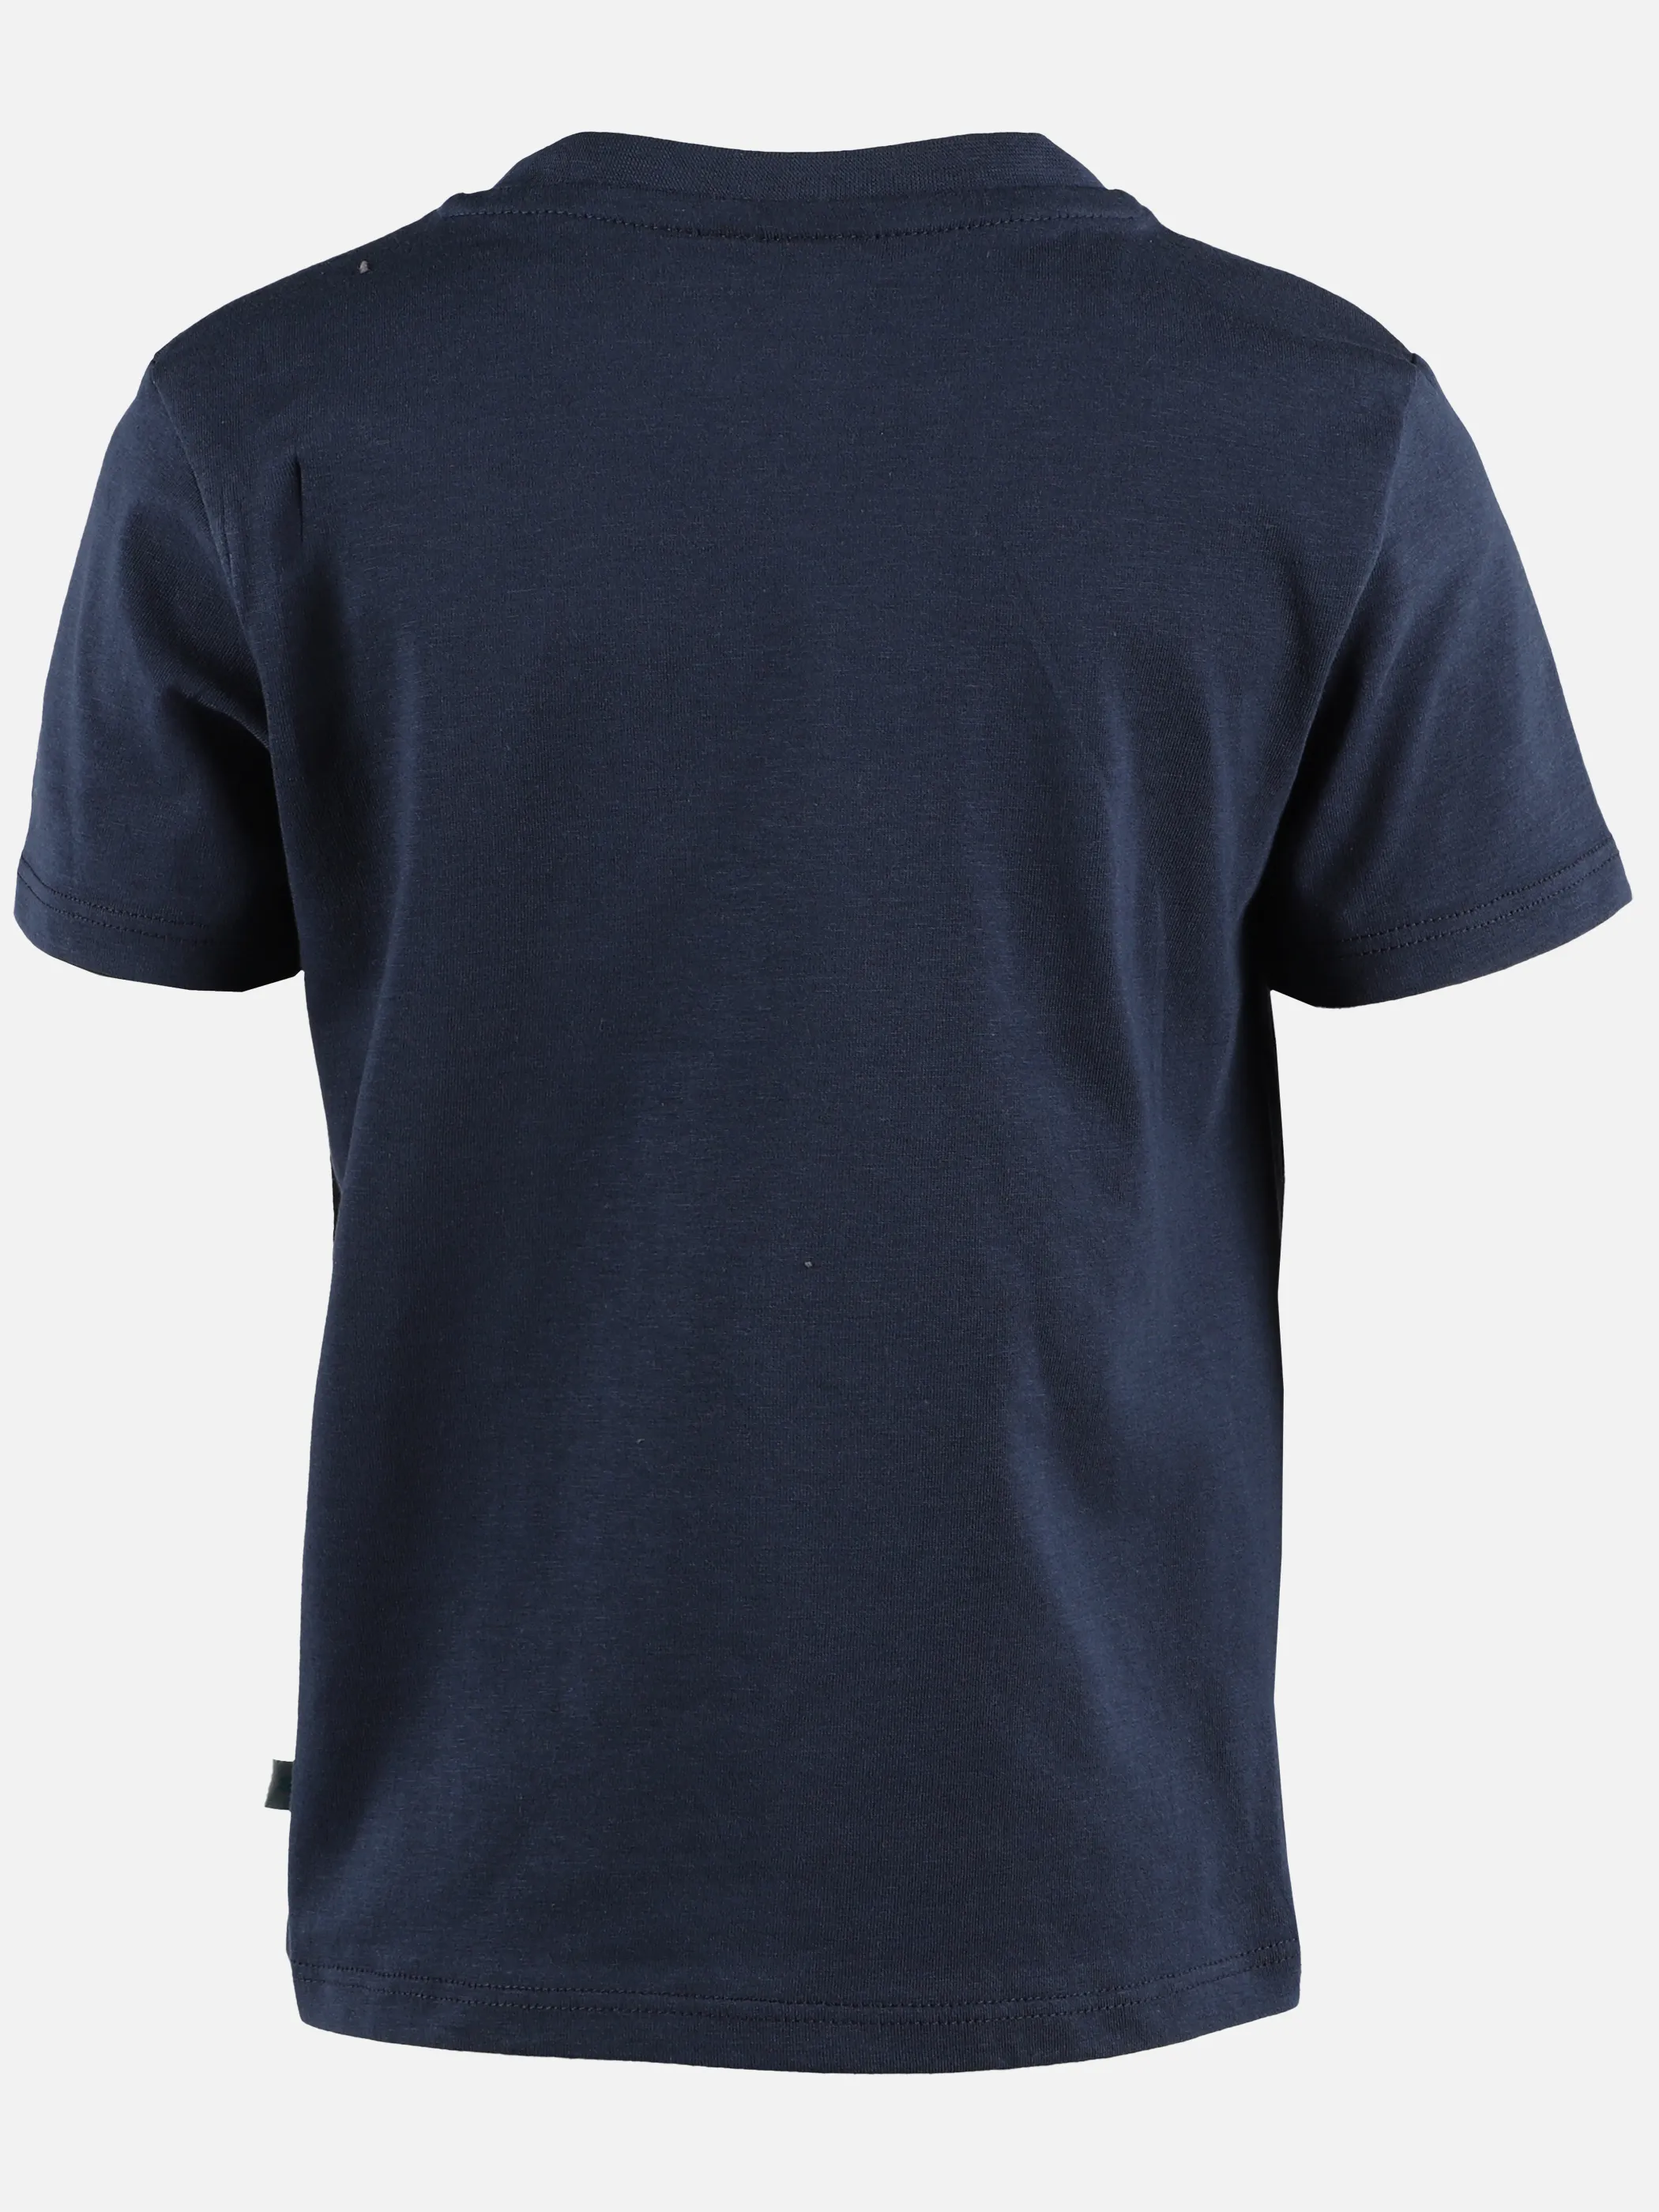 Stop + Go KJ T-Shirt in dunkelblau mit Wendepailletten-Druck Marine 891599 DUNKELBLAU 2